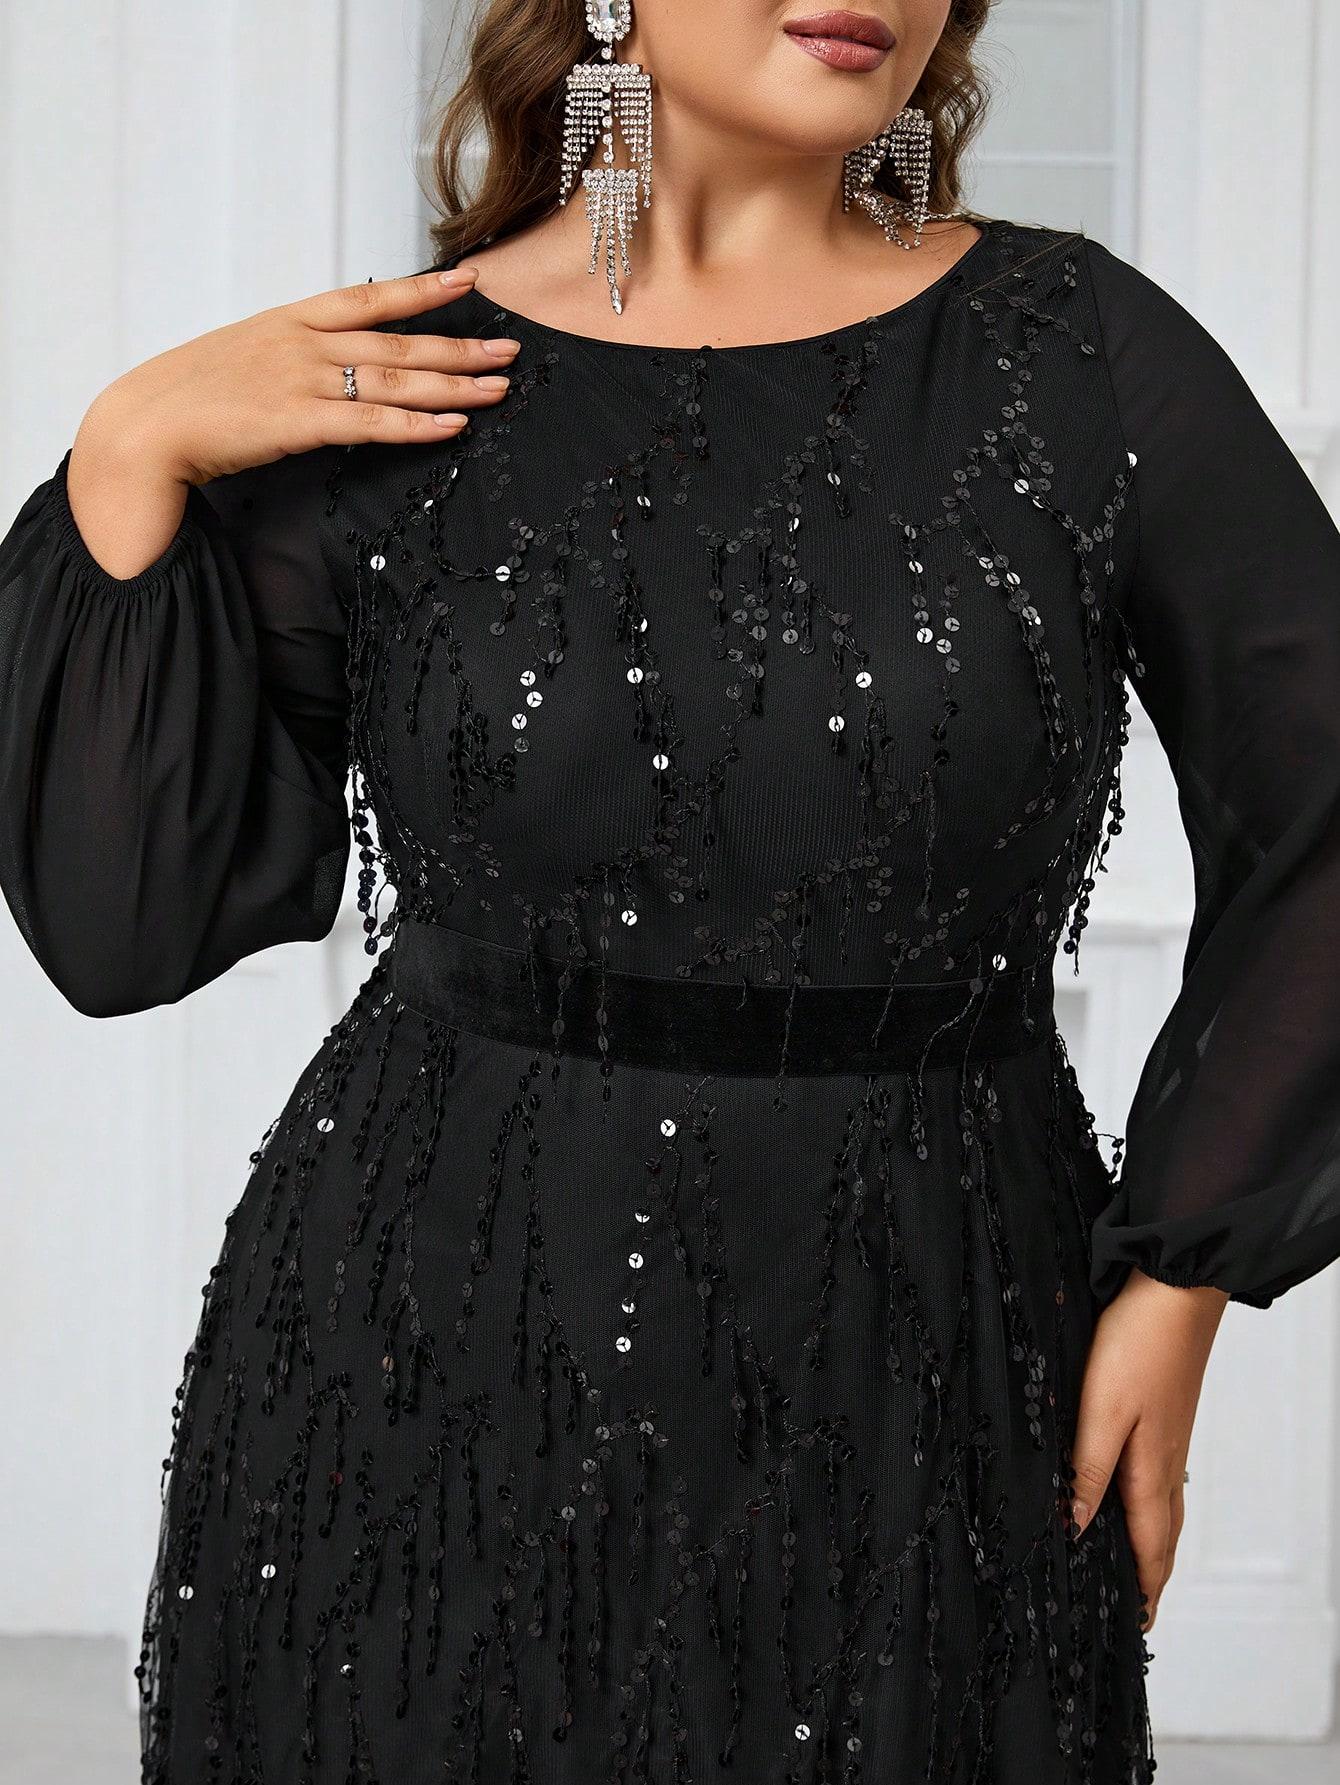 czarna maxi sukienka długi rękaw cekiny 